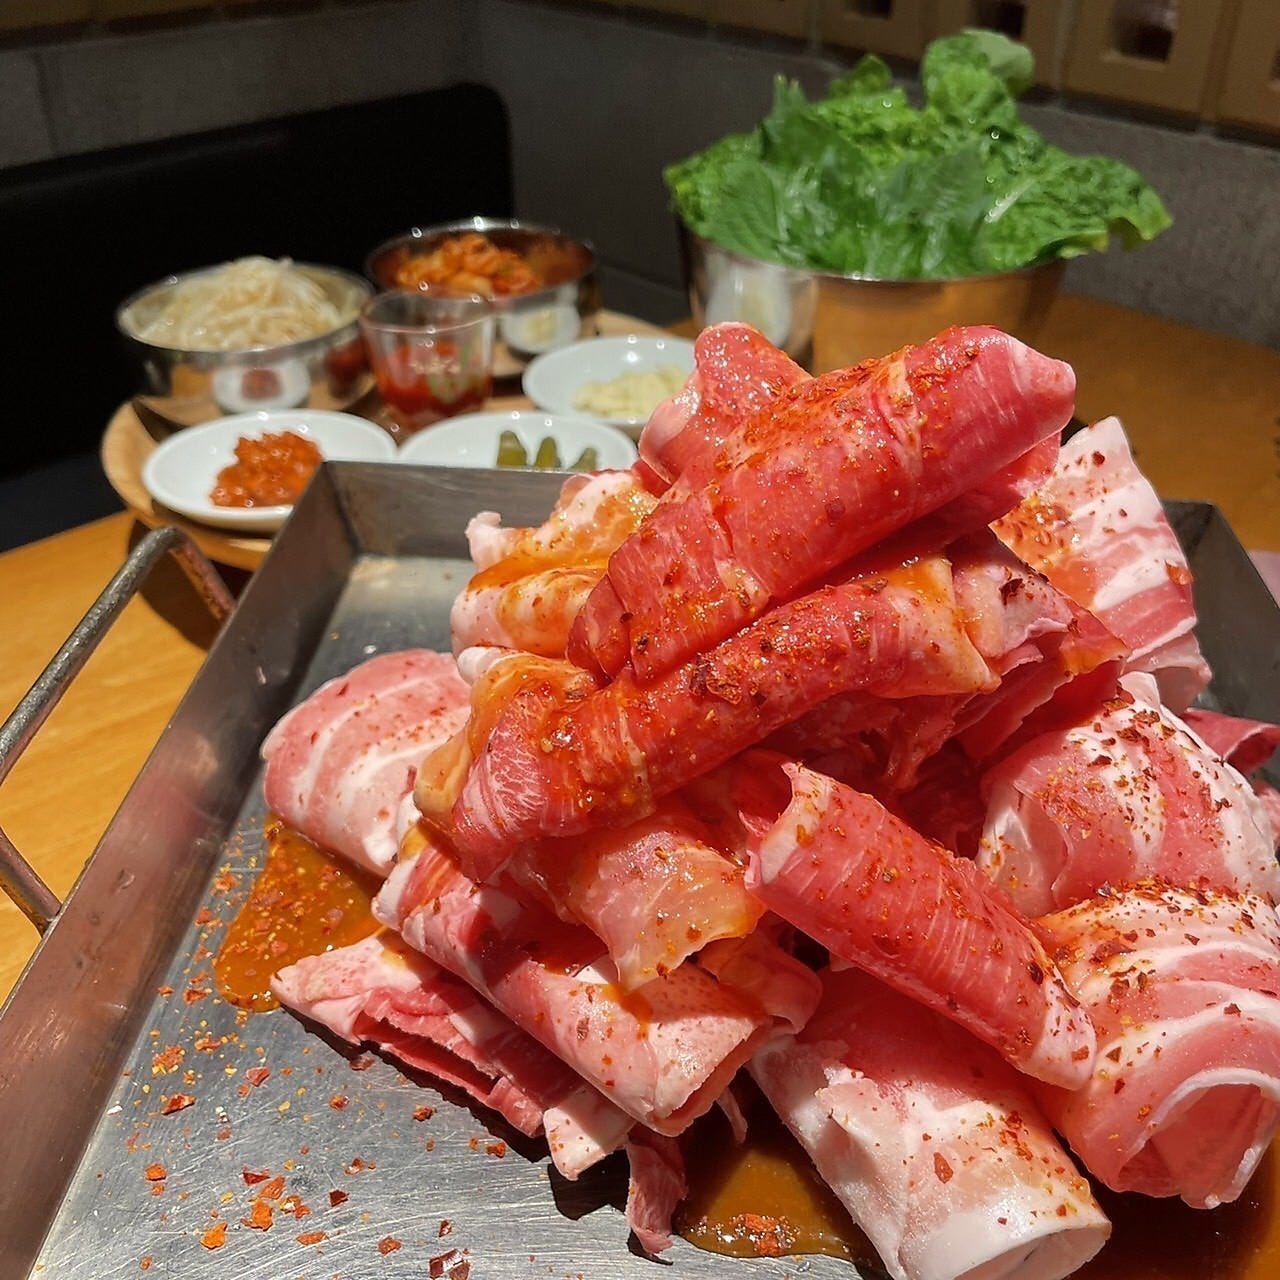 韓国料理専門 シクタン